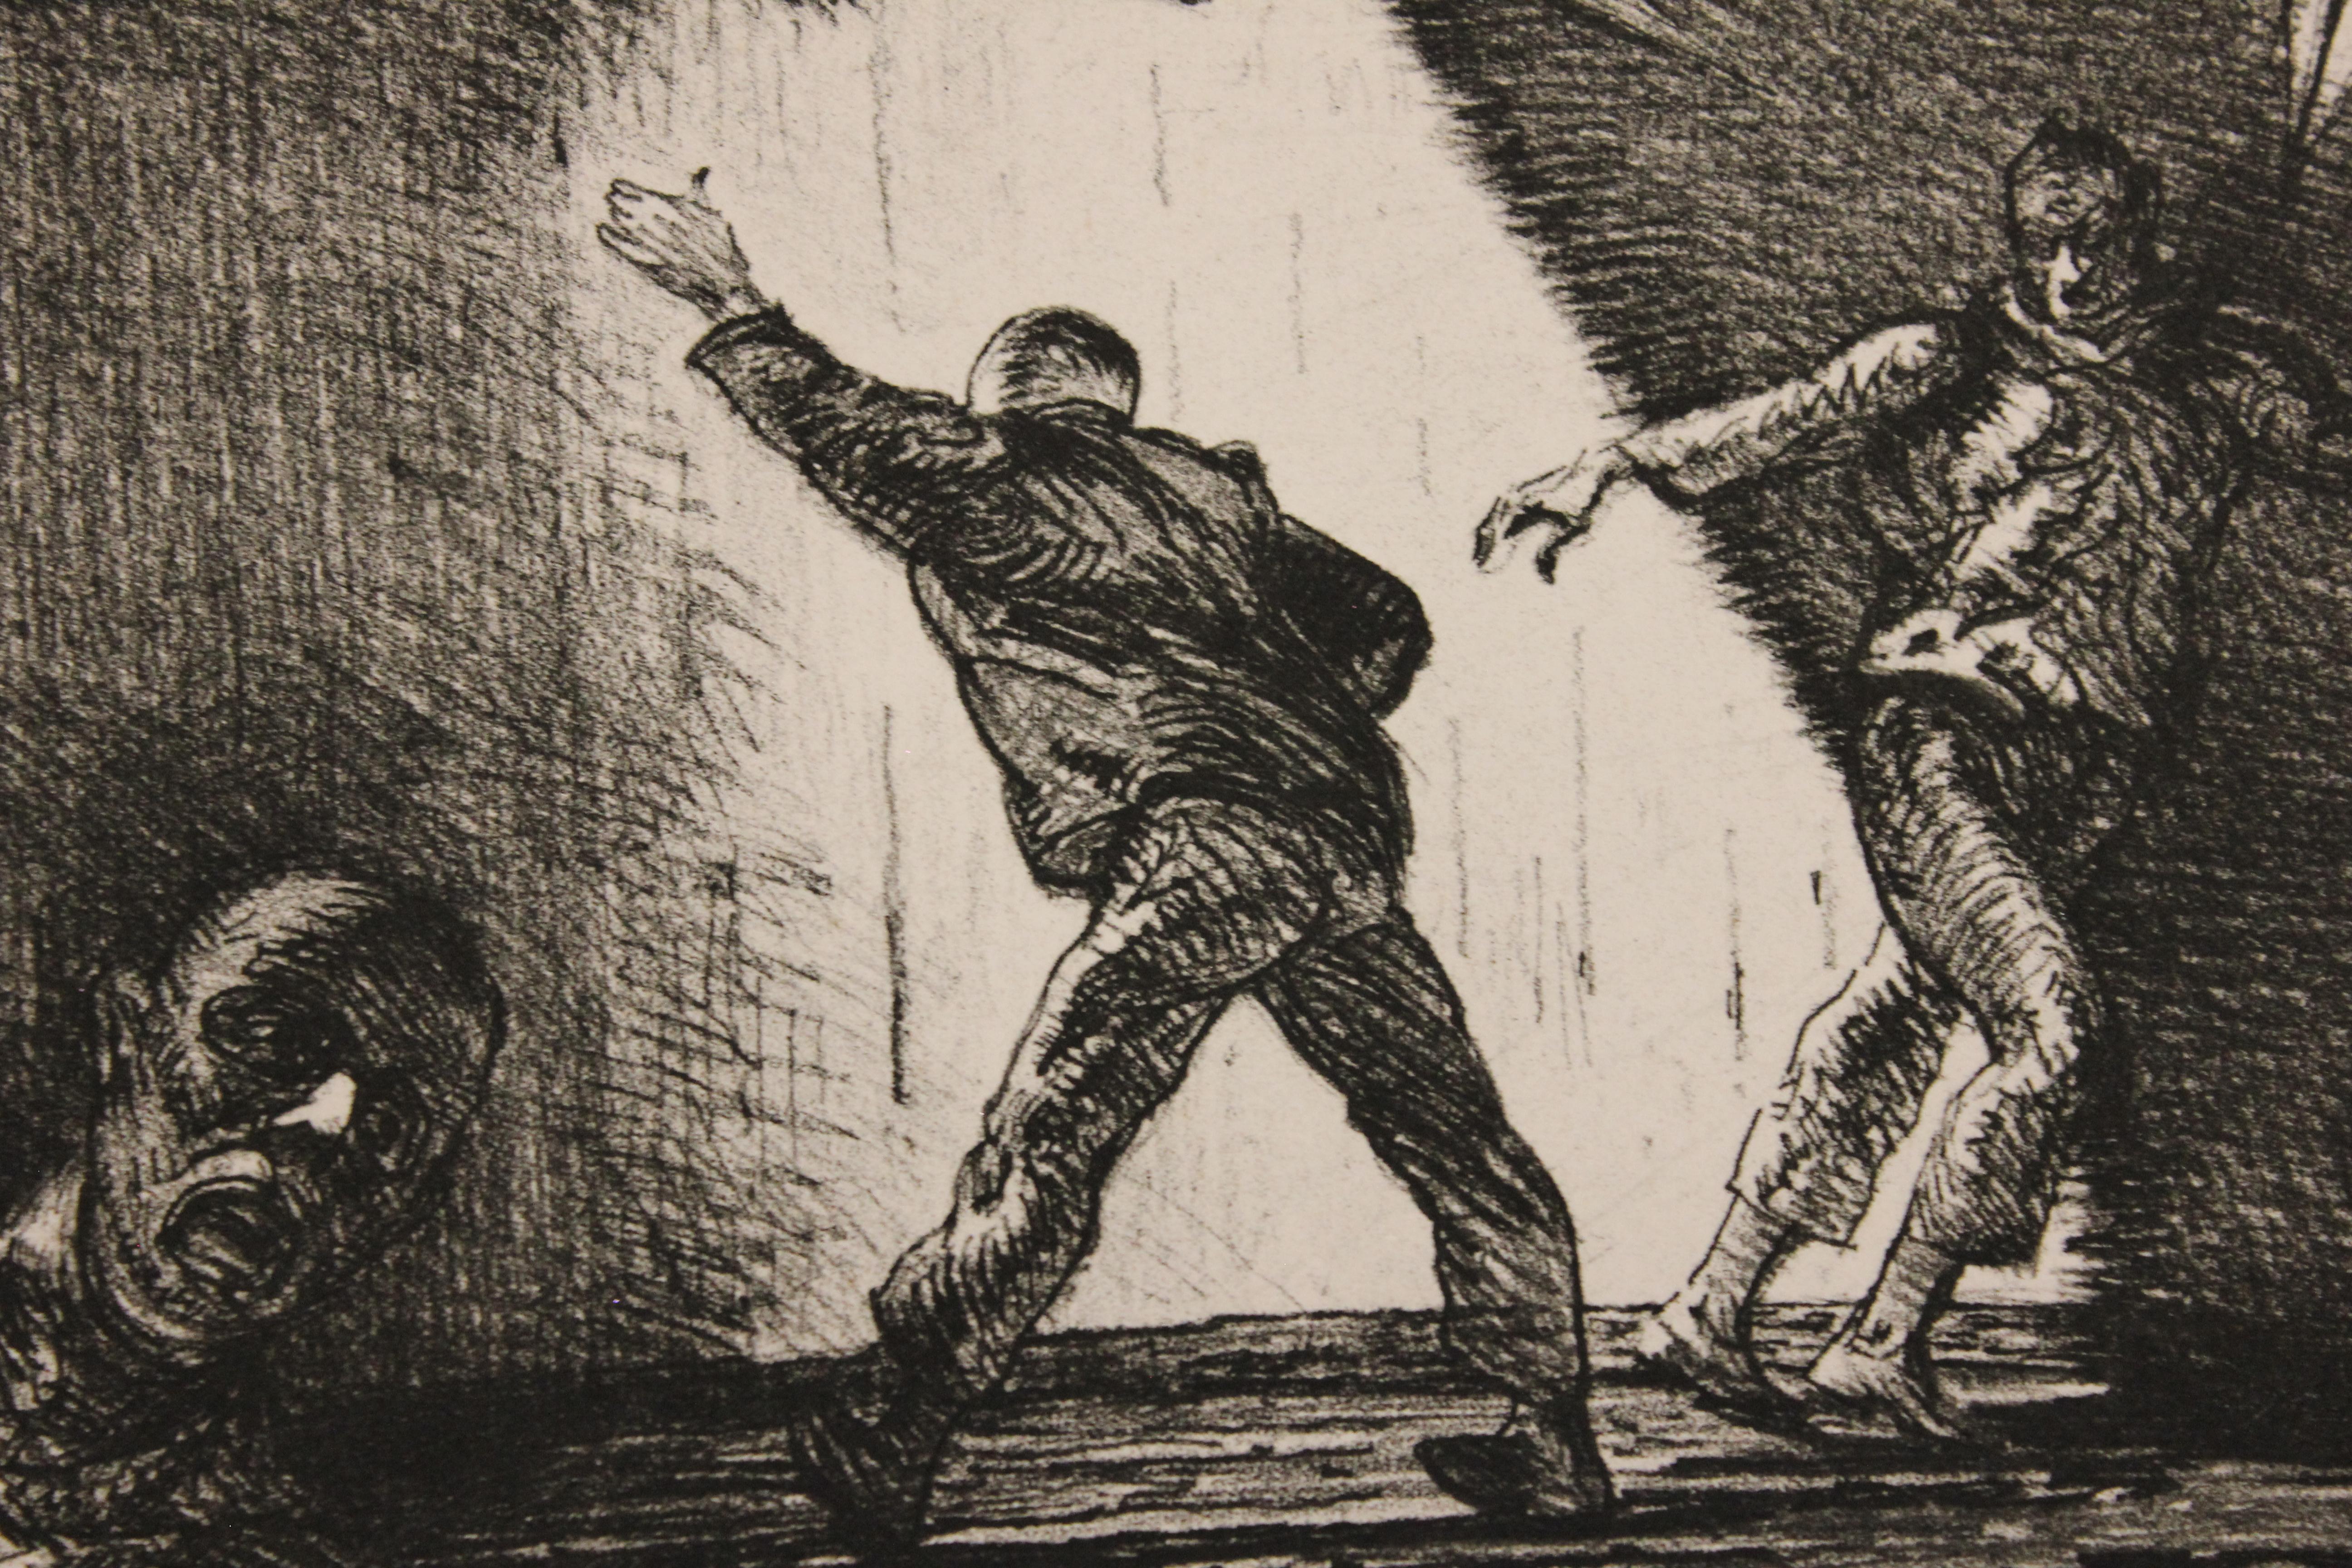 „Four Terrorist Trapped in a Bullring“, Auflage 2 von 20 Stück (Beige), Figurative Print, von Robert Levers